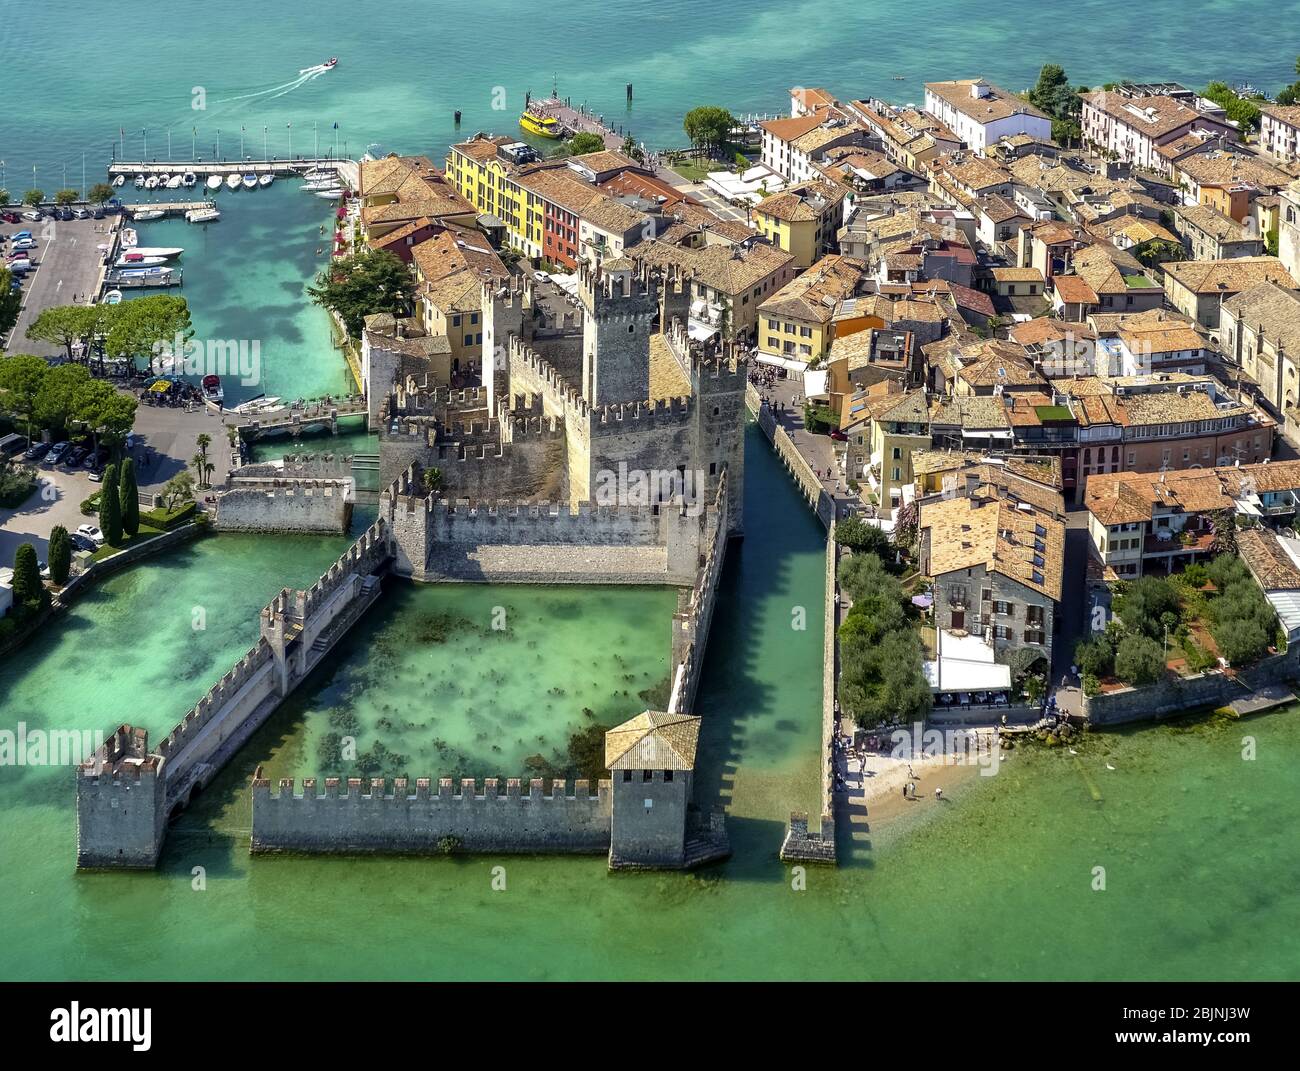 castel Castello Di Sirmione sur la péninsule Sirmione sur le Lago di Garda, 01.09.2016, vue aérienne, Italie, Lombardie, Lac de Garde, Sirmione Banque D'Images